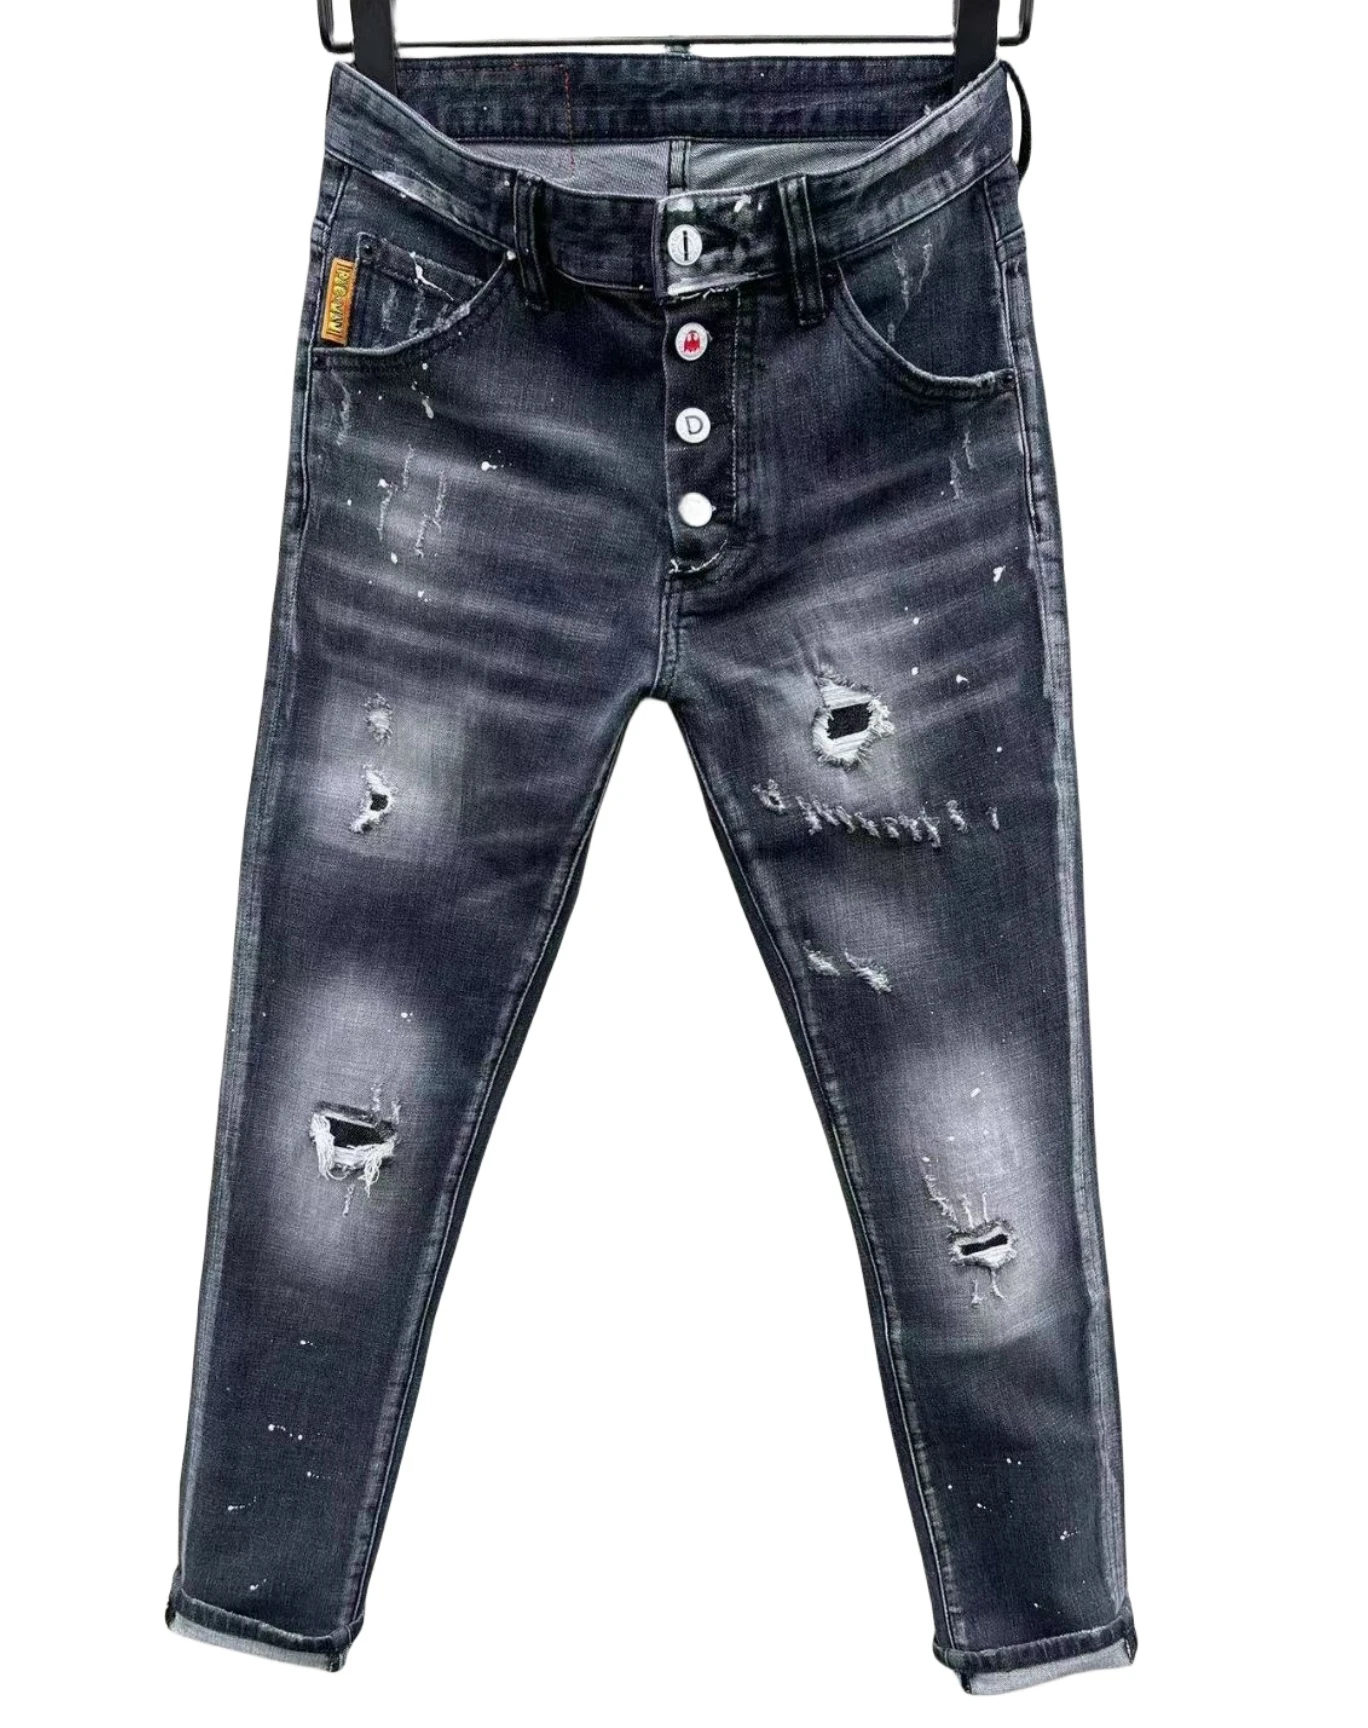 

2023 новые модные брендовые мужские джинсы с дырками и рисунком в стиле ретро мотоциклетные джинсы C008